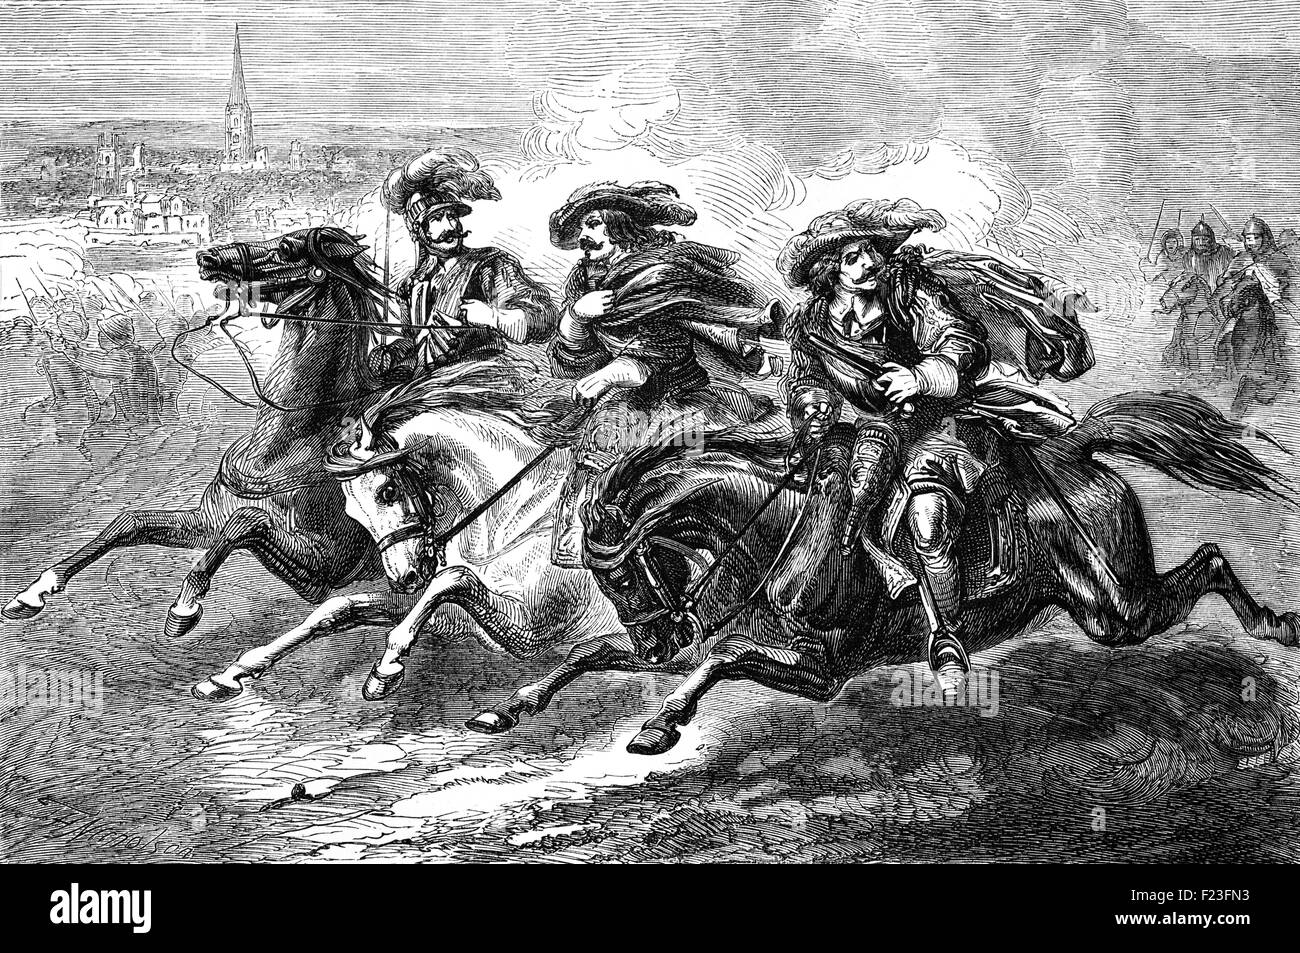 Cavaliers fuyant la bataille de Naseby, la bataille clé de la première guerre civile anglaise. Le 14 juin 1645, la principale armée royaliste du Roi Charles I a été détruit par le Parlementaire New Model Army commandée par Sir Thomas Fairfax et Oliver Cromwell. Banque D'Images